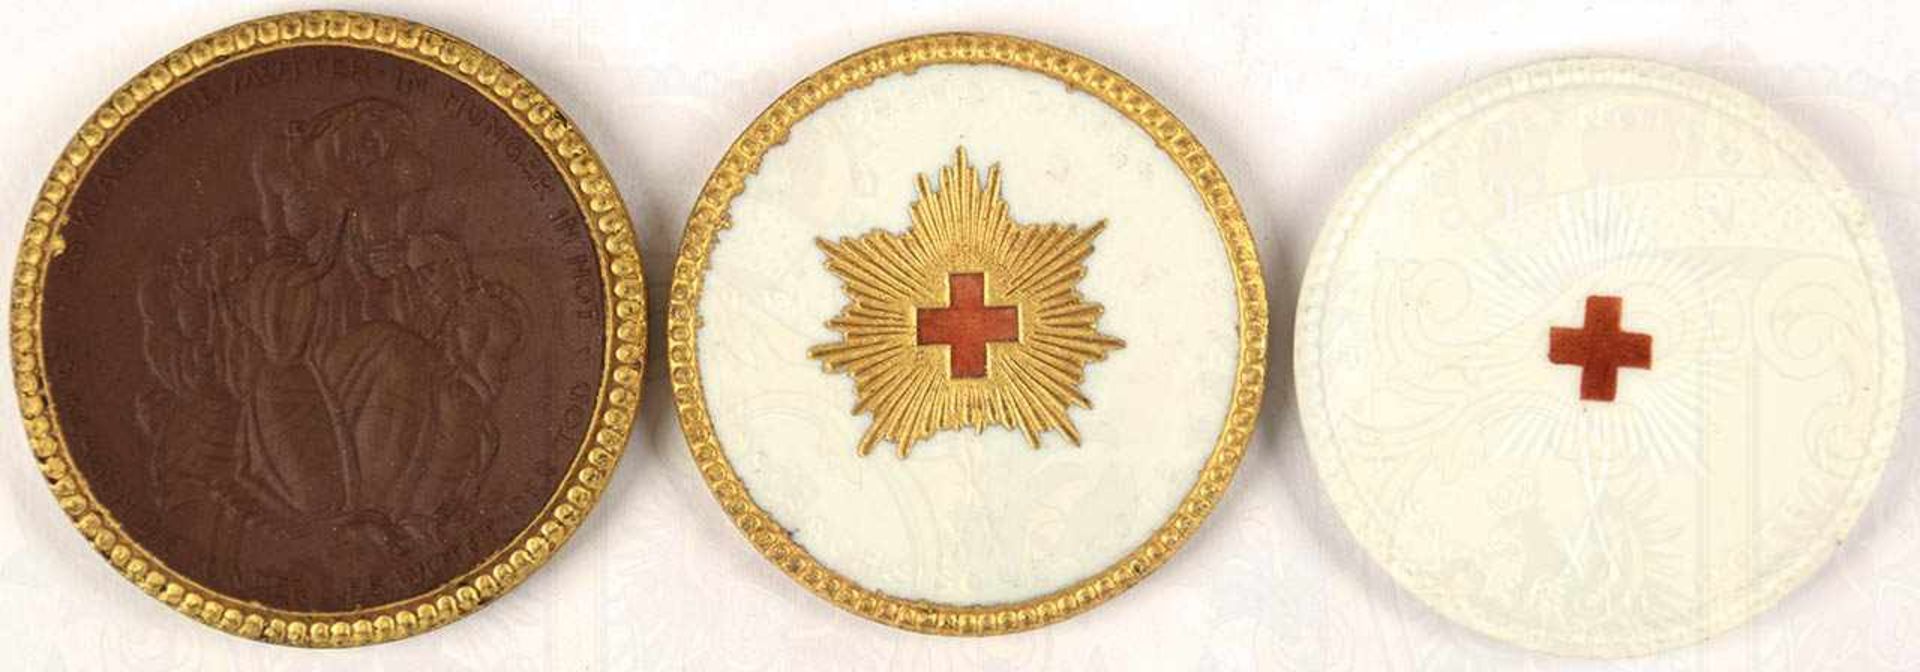 3 MEIßEN-MEDAILLEN, Sächsisches Rotes Kreuz 1921, 1x braunes Böttgersteinzeug, 2x weißes